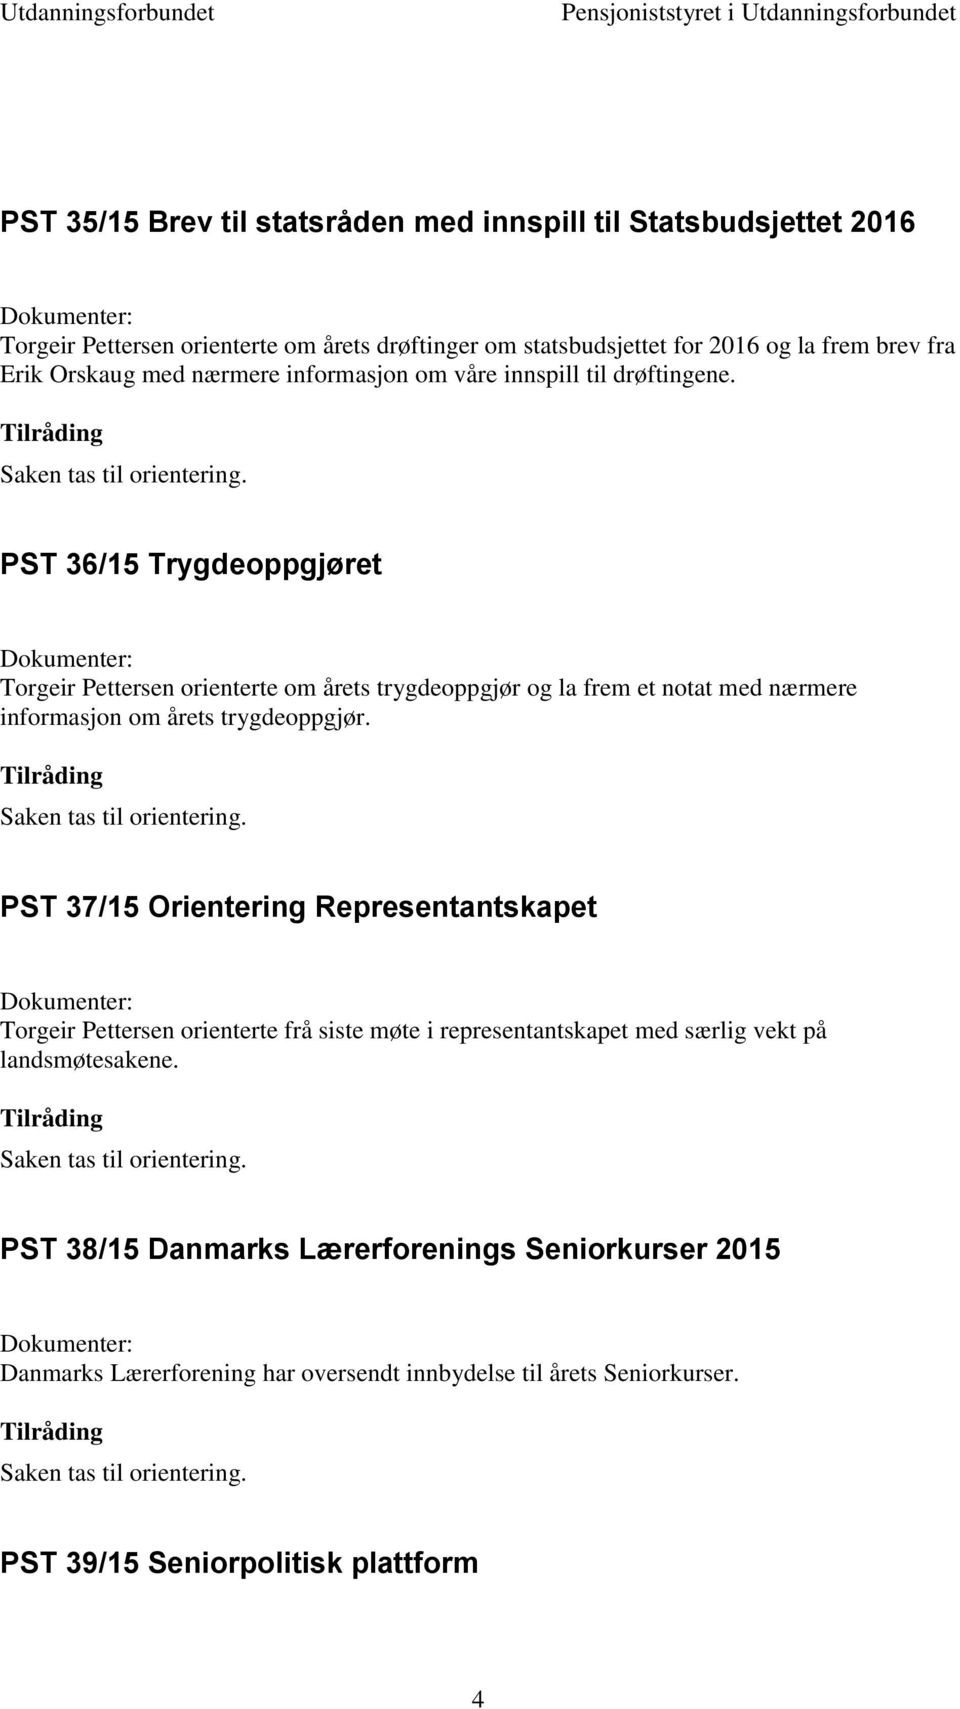 PST 36/15 Trygdeoppgjøret Torgeir Pettersen orienterte om årets trygdeoppgjør og la frem et notat med nærmere informasjon om årets trygdeoppgjør.